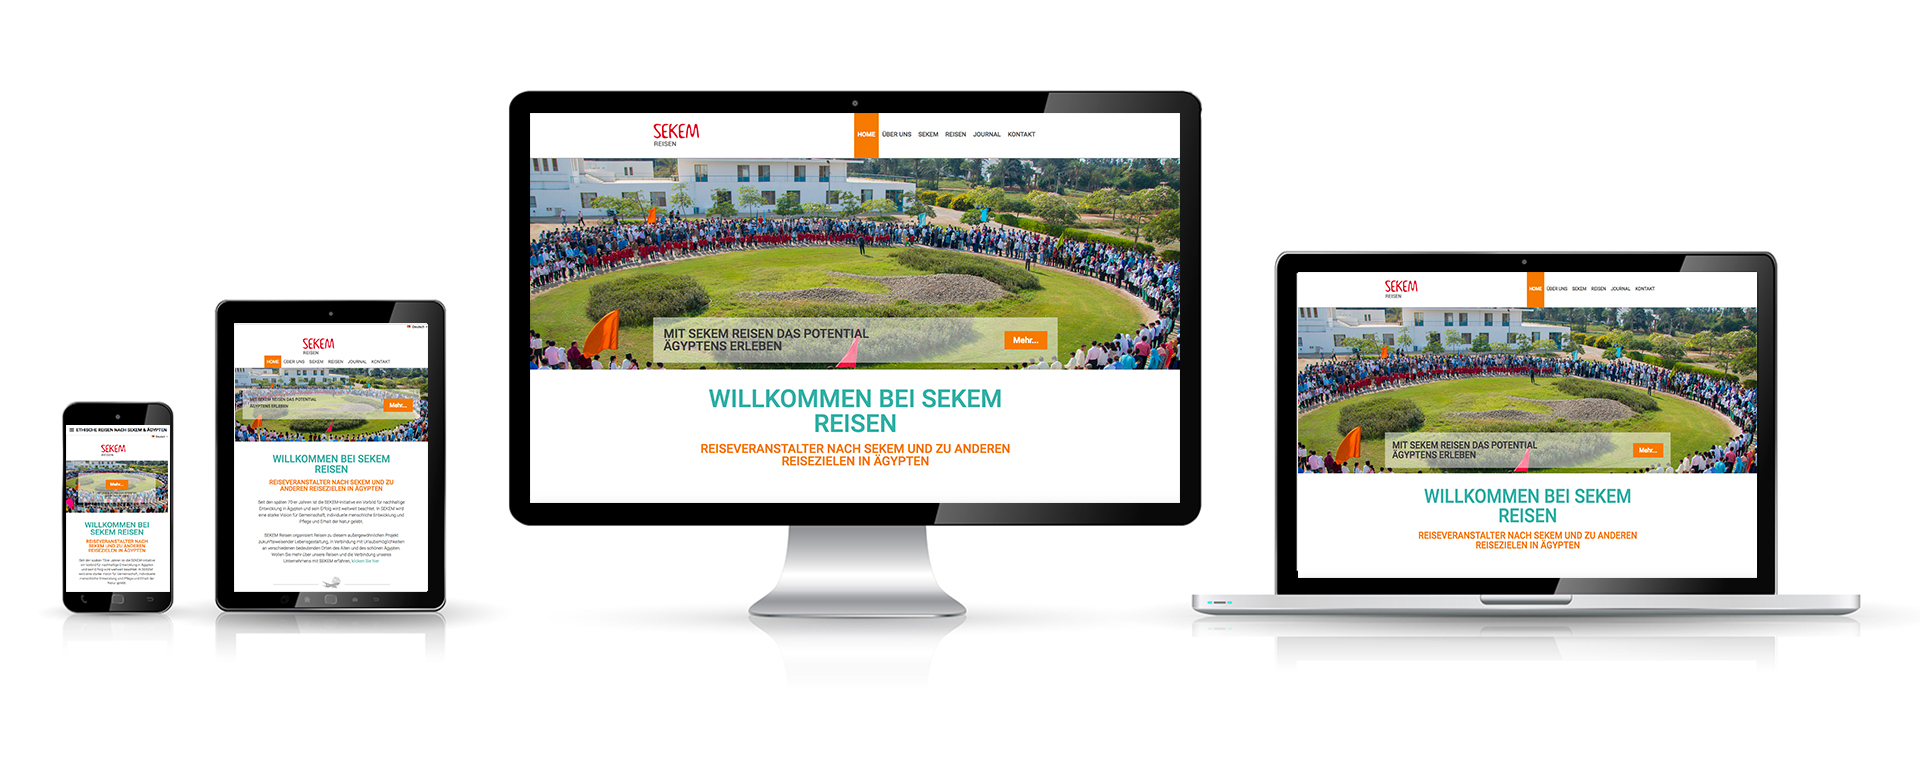 Webdesign Dienst Überlingen, Responsive Website Sekem Reisen